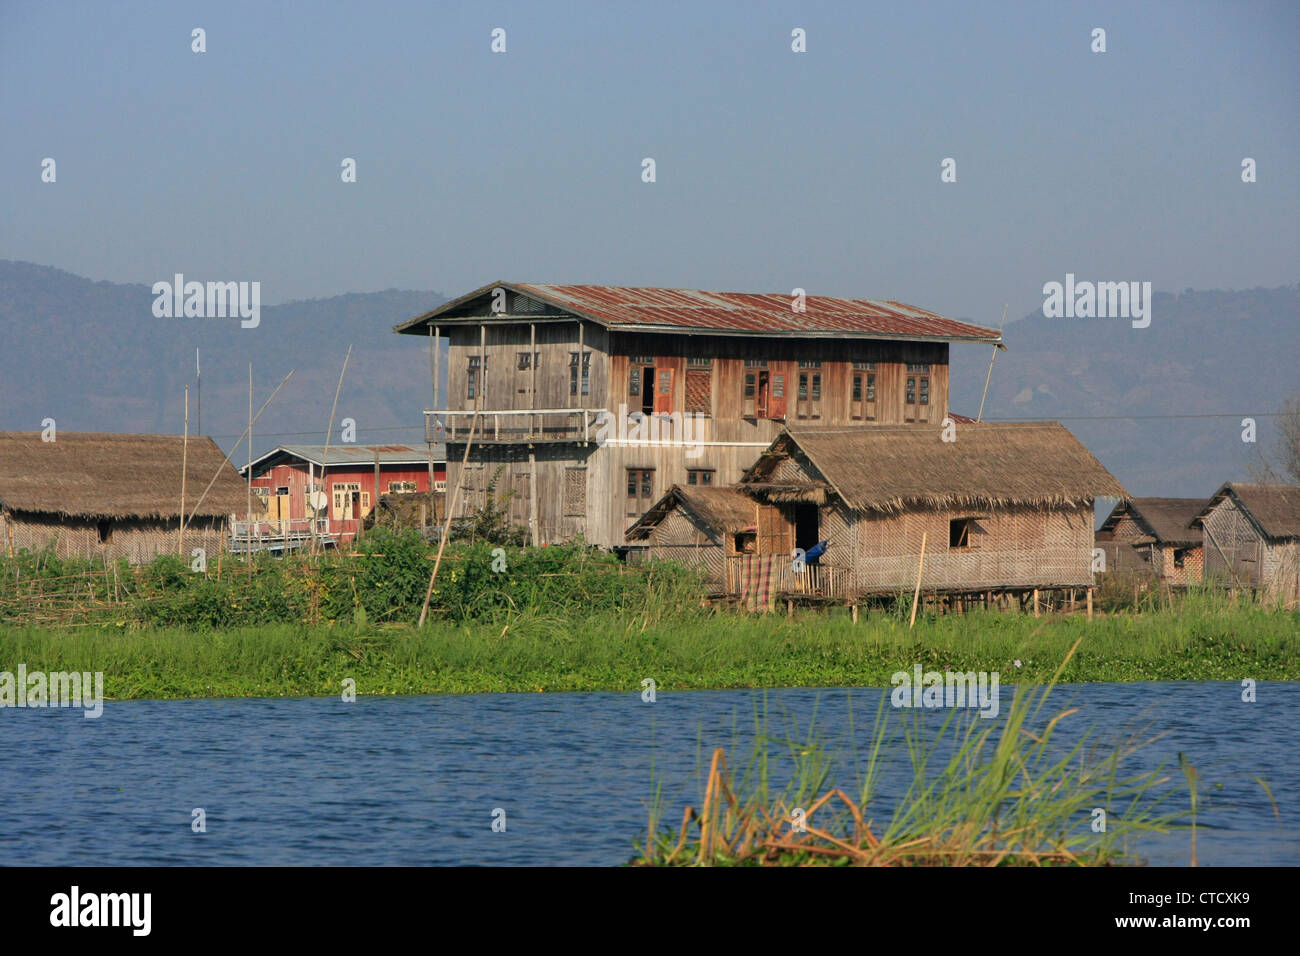 Des maisons sur pilotis en bois traditionnel, au lac Inle, l'État de Shan, Myanmar, en Asie du sud-est Banque D'Images